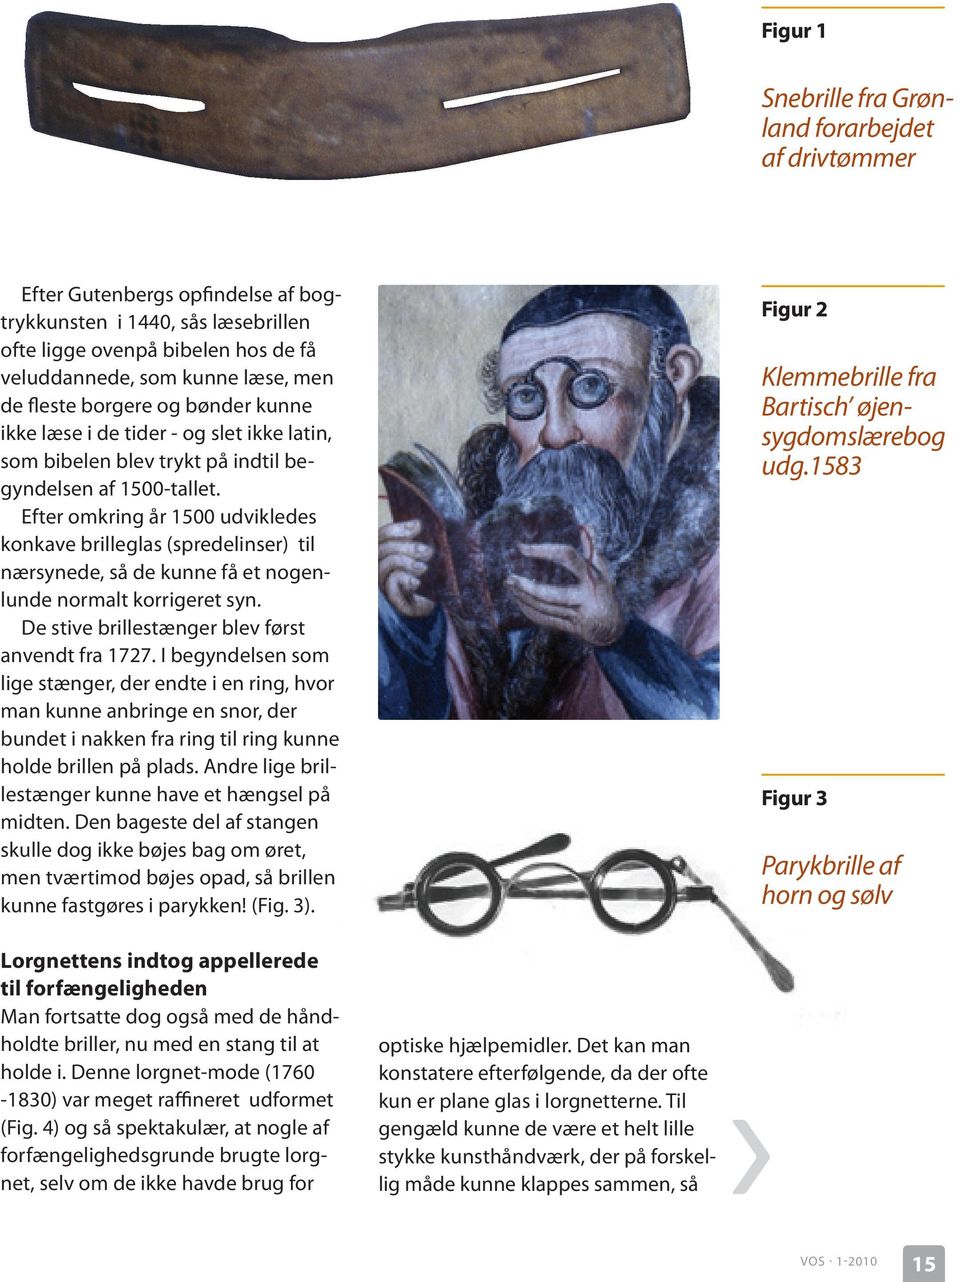 Efter omkring år 1500 udvikledes konkave brilleglas (spredelinser) til nærsynede, så de kunne få et nogenlunde normalt korrigeret syn. De stive brillestænger blev først anvendt fra 1727.